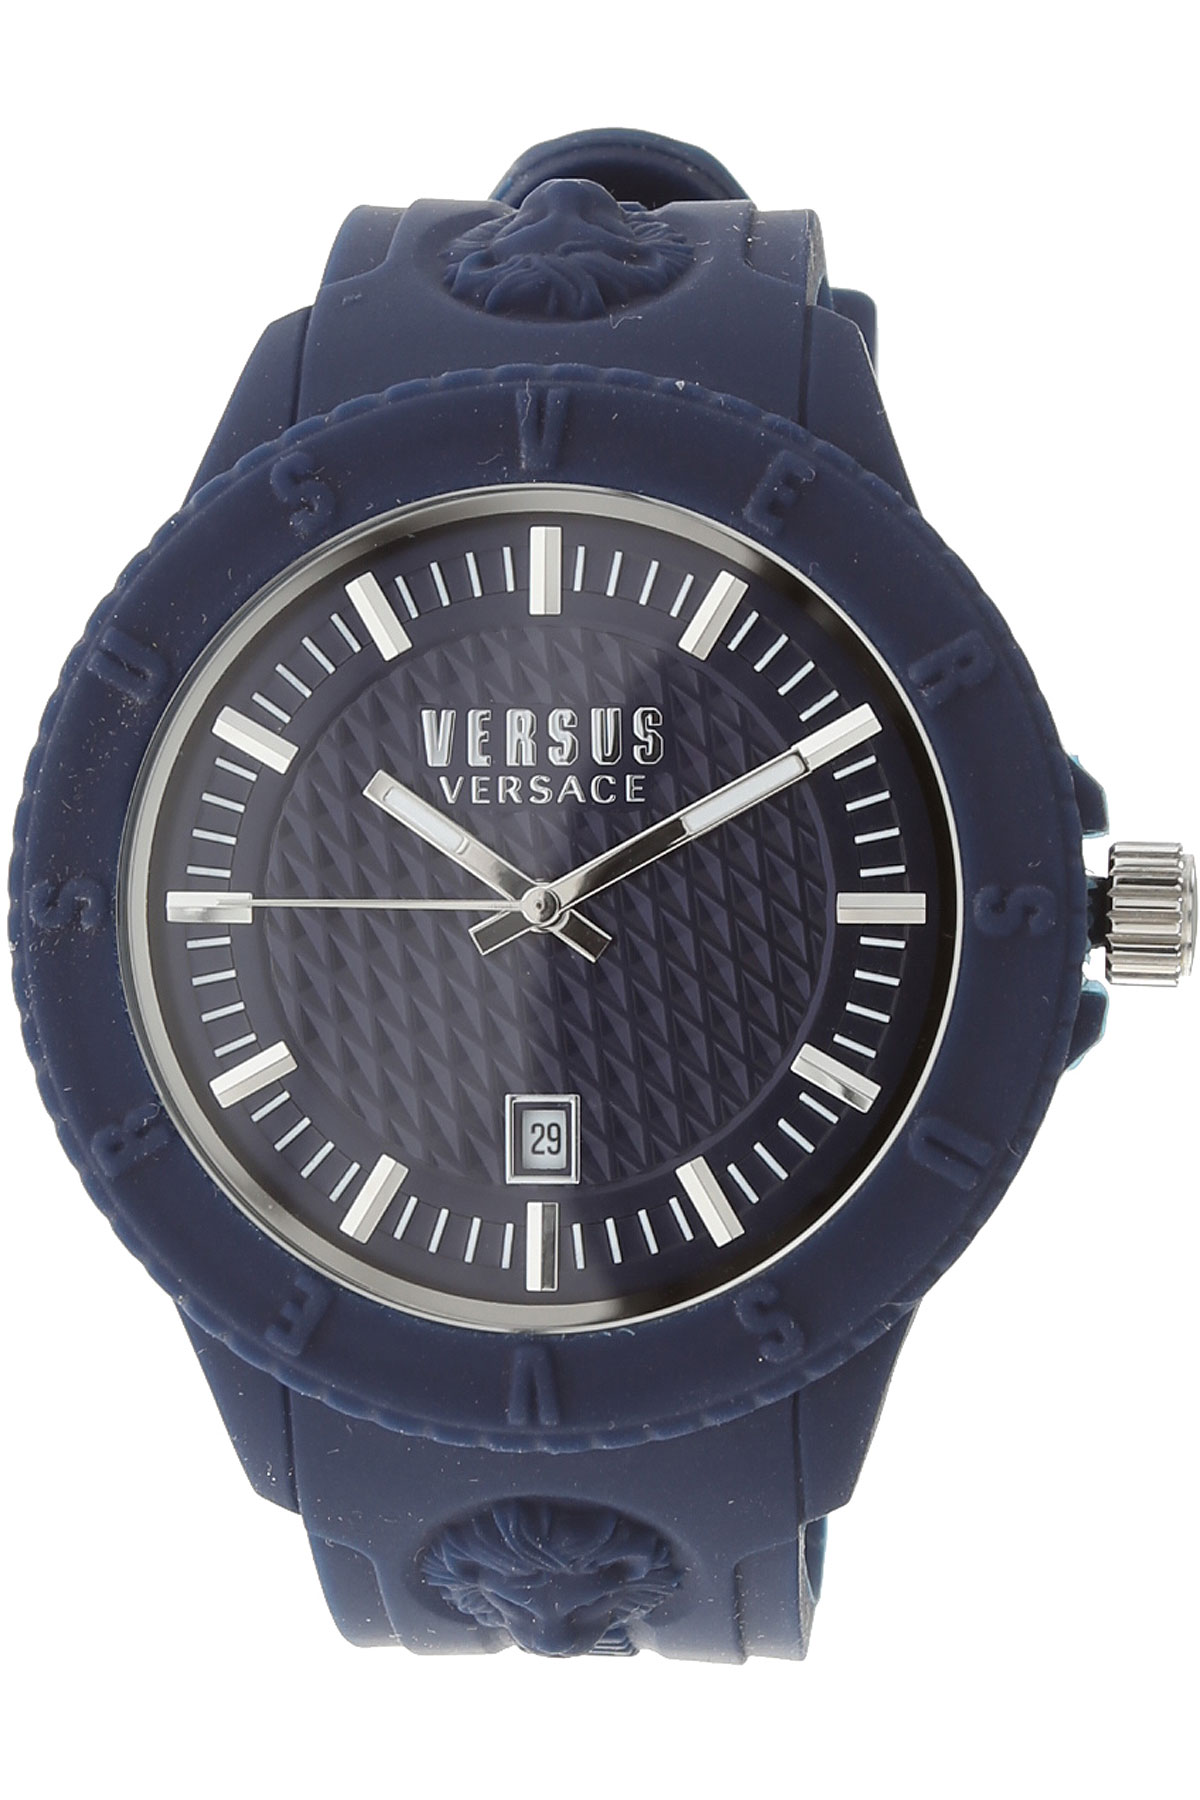 Versace Uhr für Damen, Chronometer, Zeitmesser Günstig im Outlet Sale, Blau, Gummi, 2017